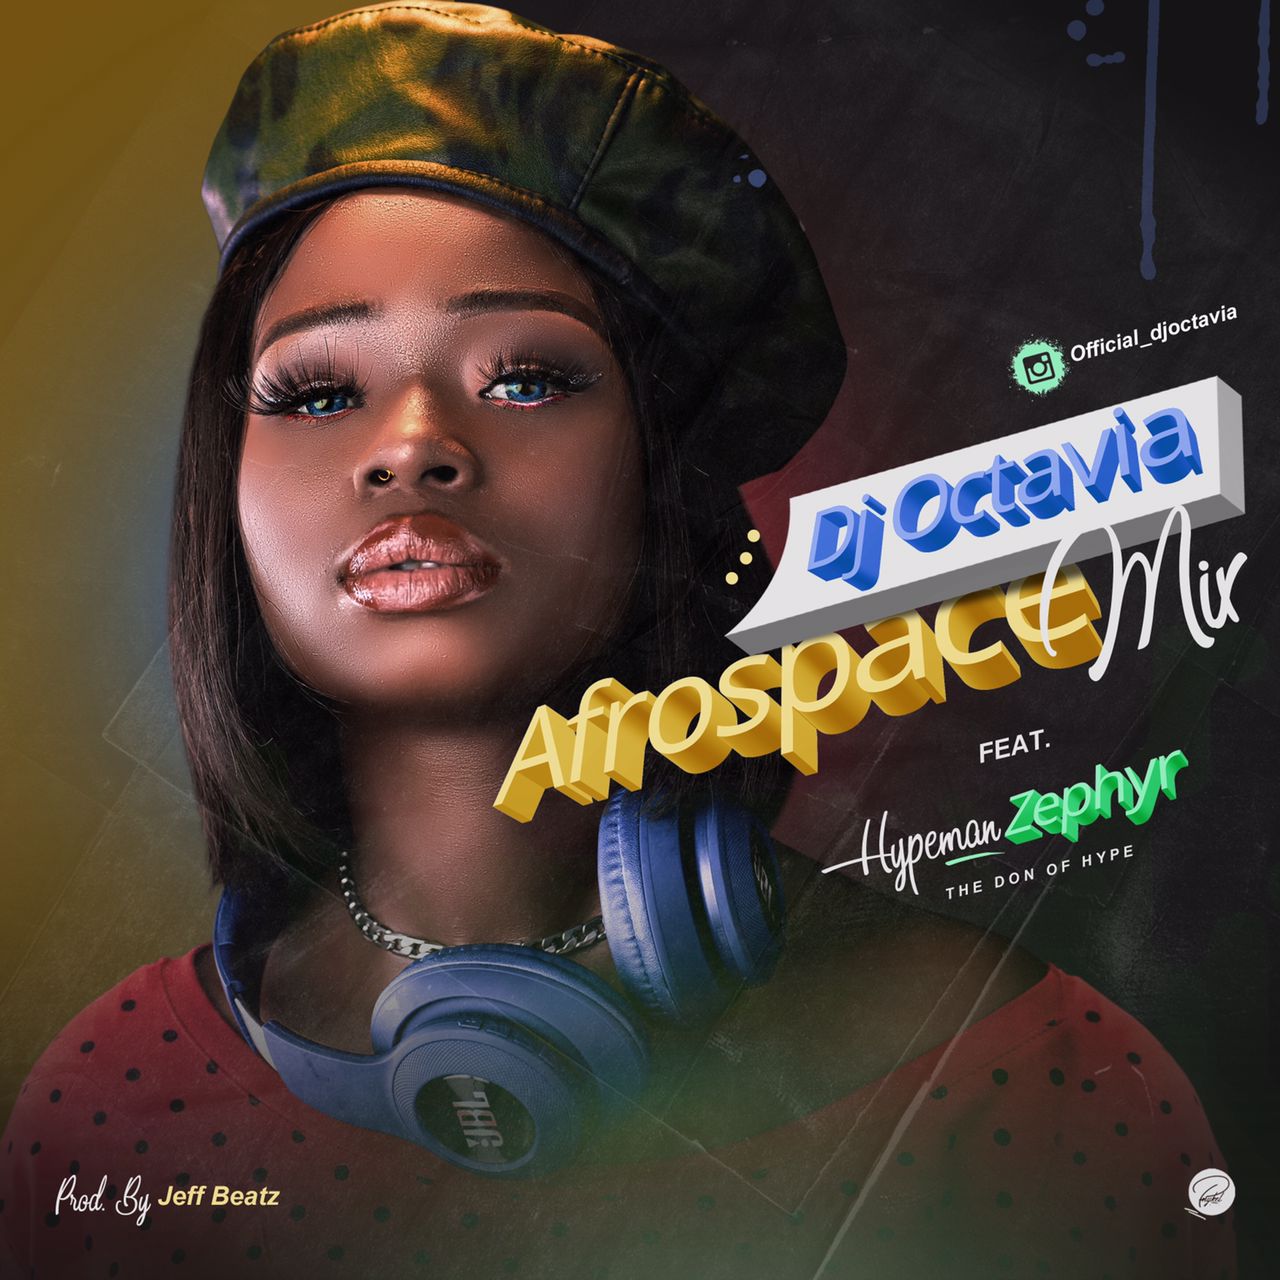 Dj Octavia - Afrospace Mix Feat. Hypeman Zephyr 15